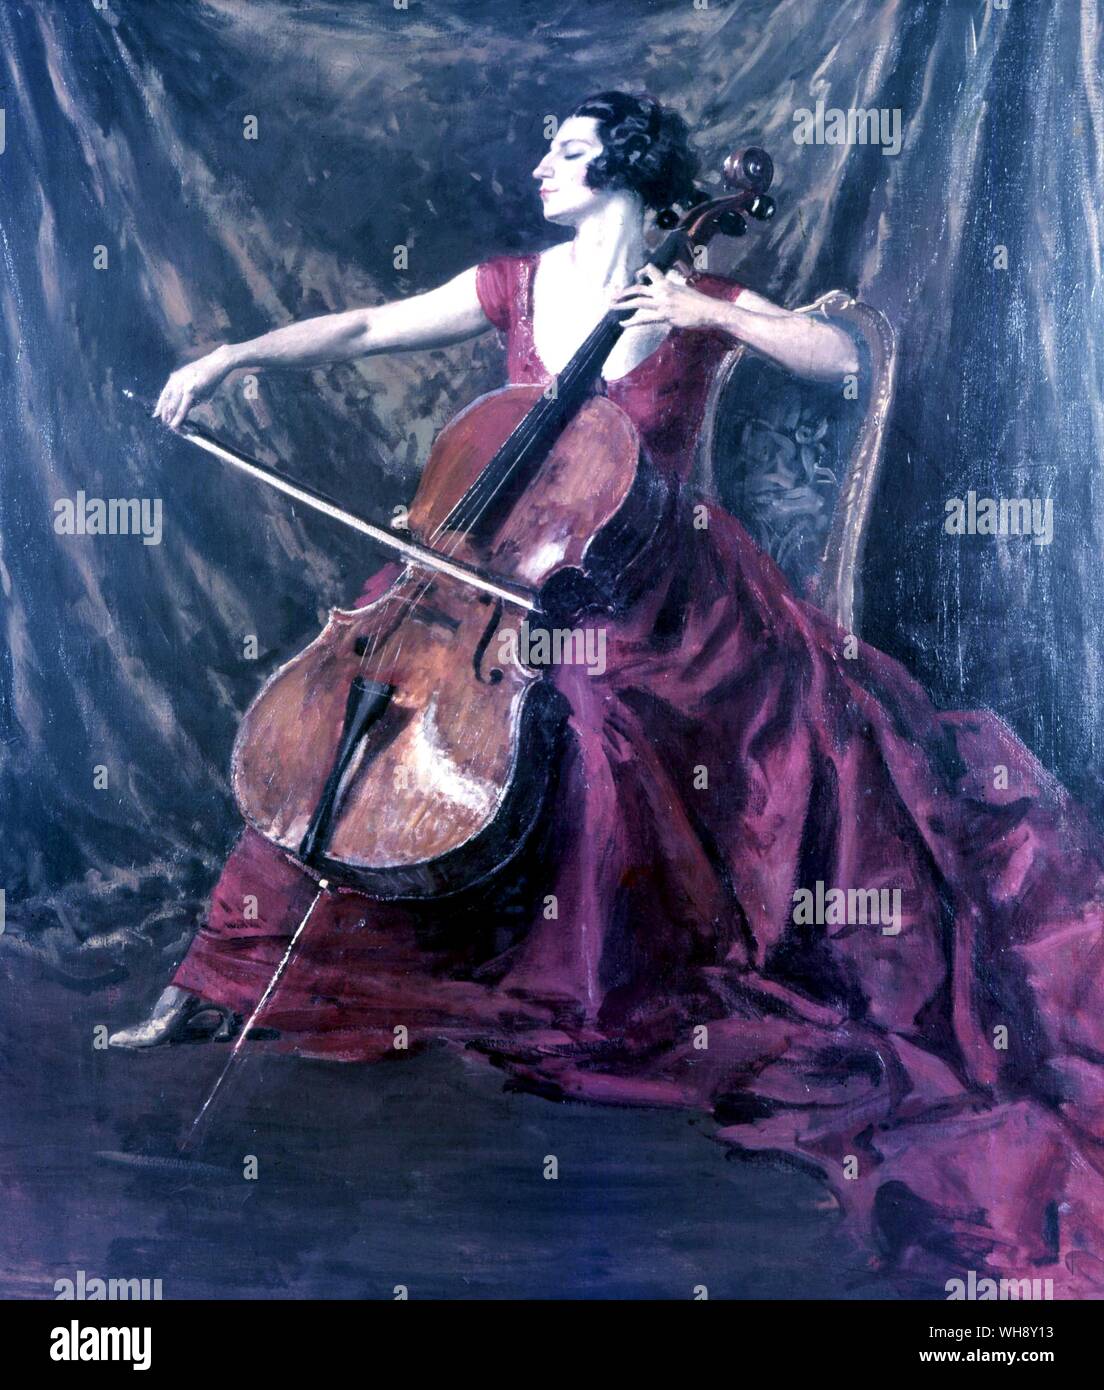 Guilhermina Suggia violoncello 1888-1950 violoncellista portoghese Foto Stock